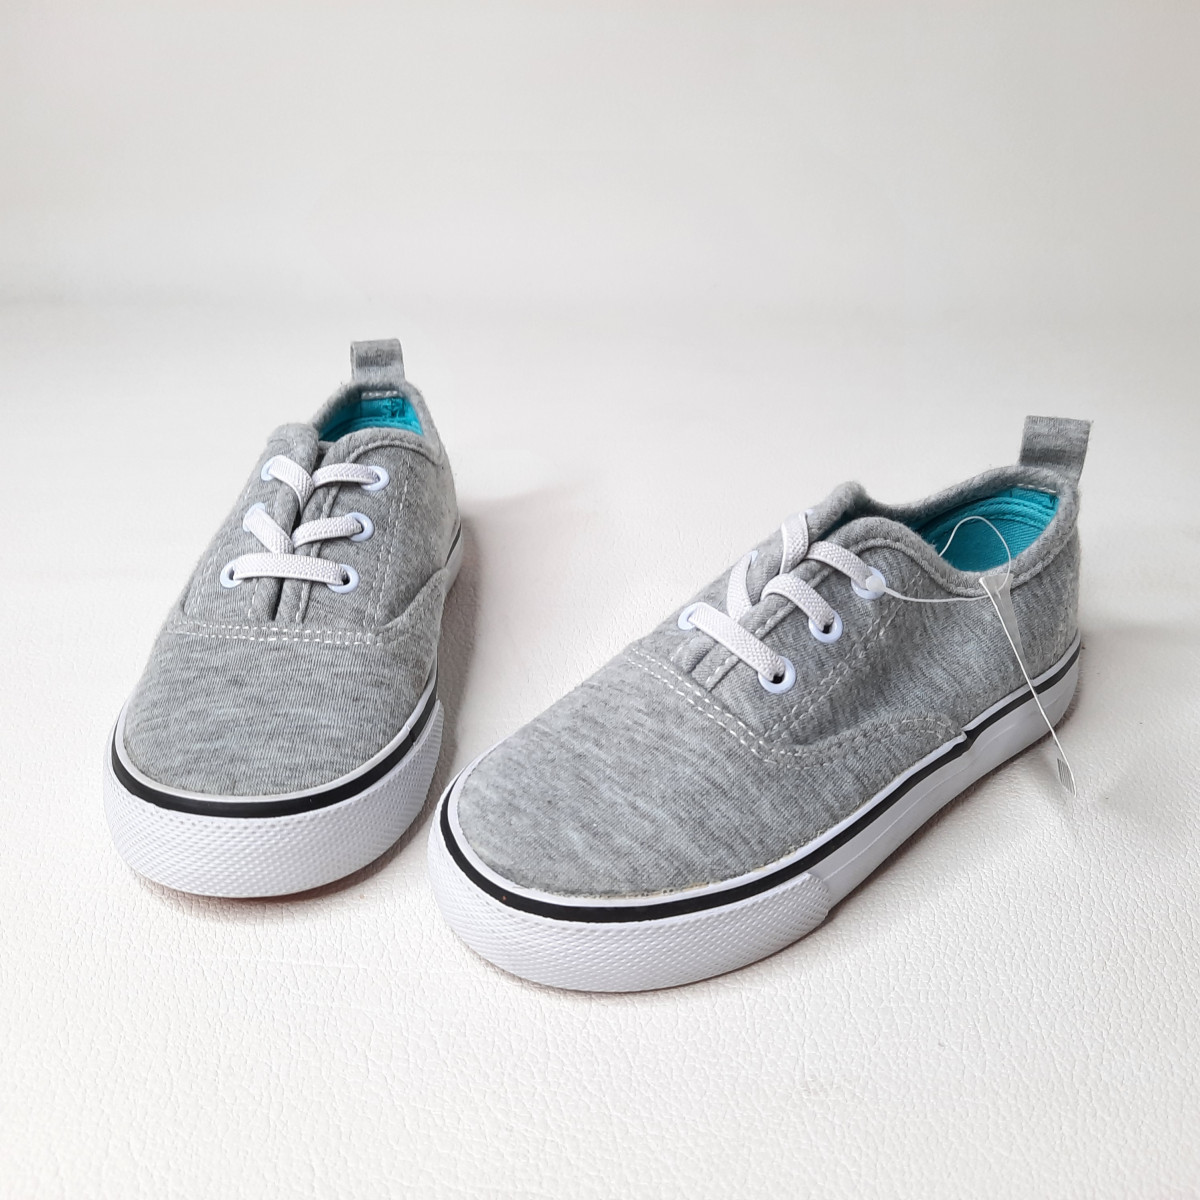 Chaussures grise P29 - Boutique Toup'tibou - photo 6